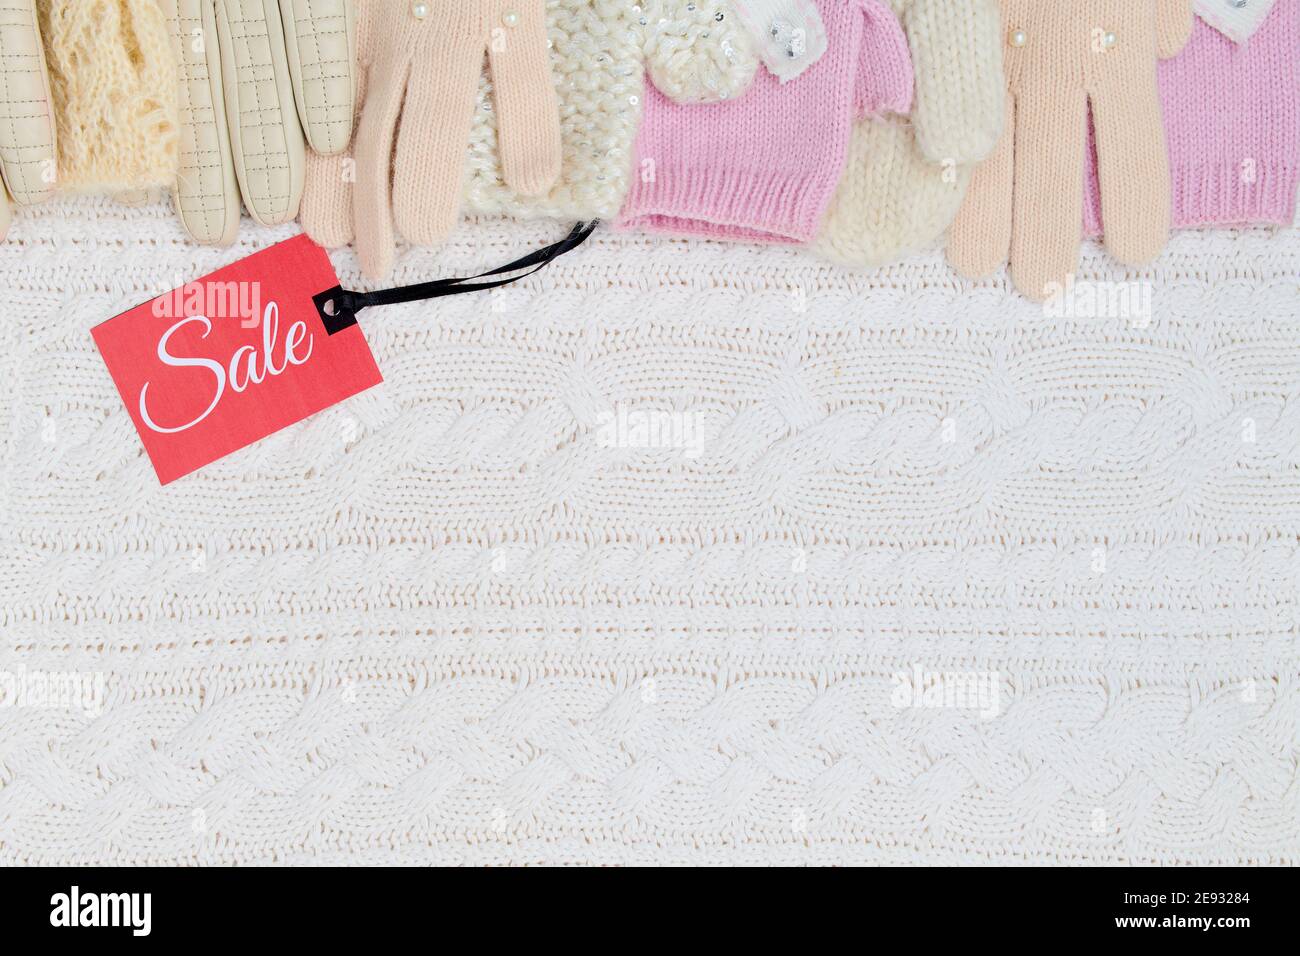 Winter flach Lay mit Fäustlingen, Handschuhe und Sale-Tag auf weißem gestrickten Hintergrund. Stockfoto